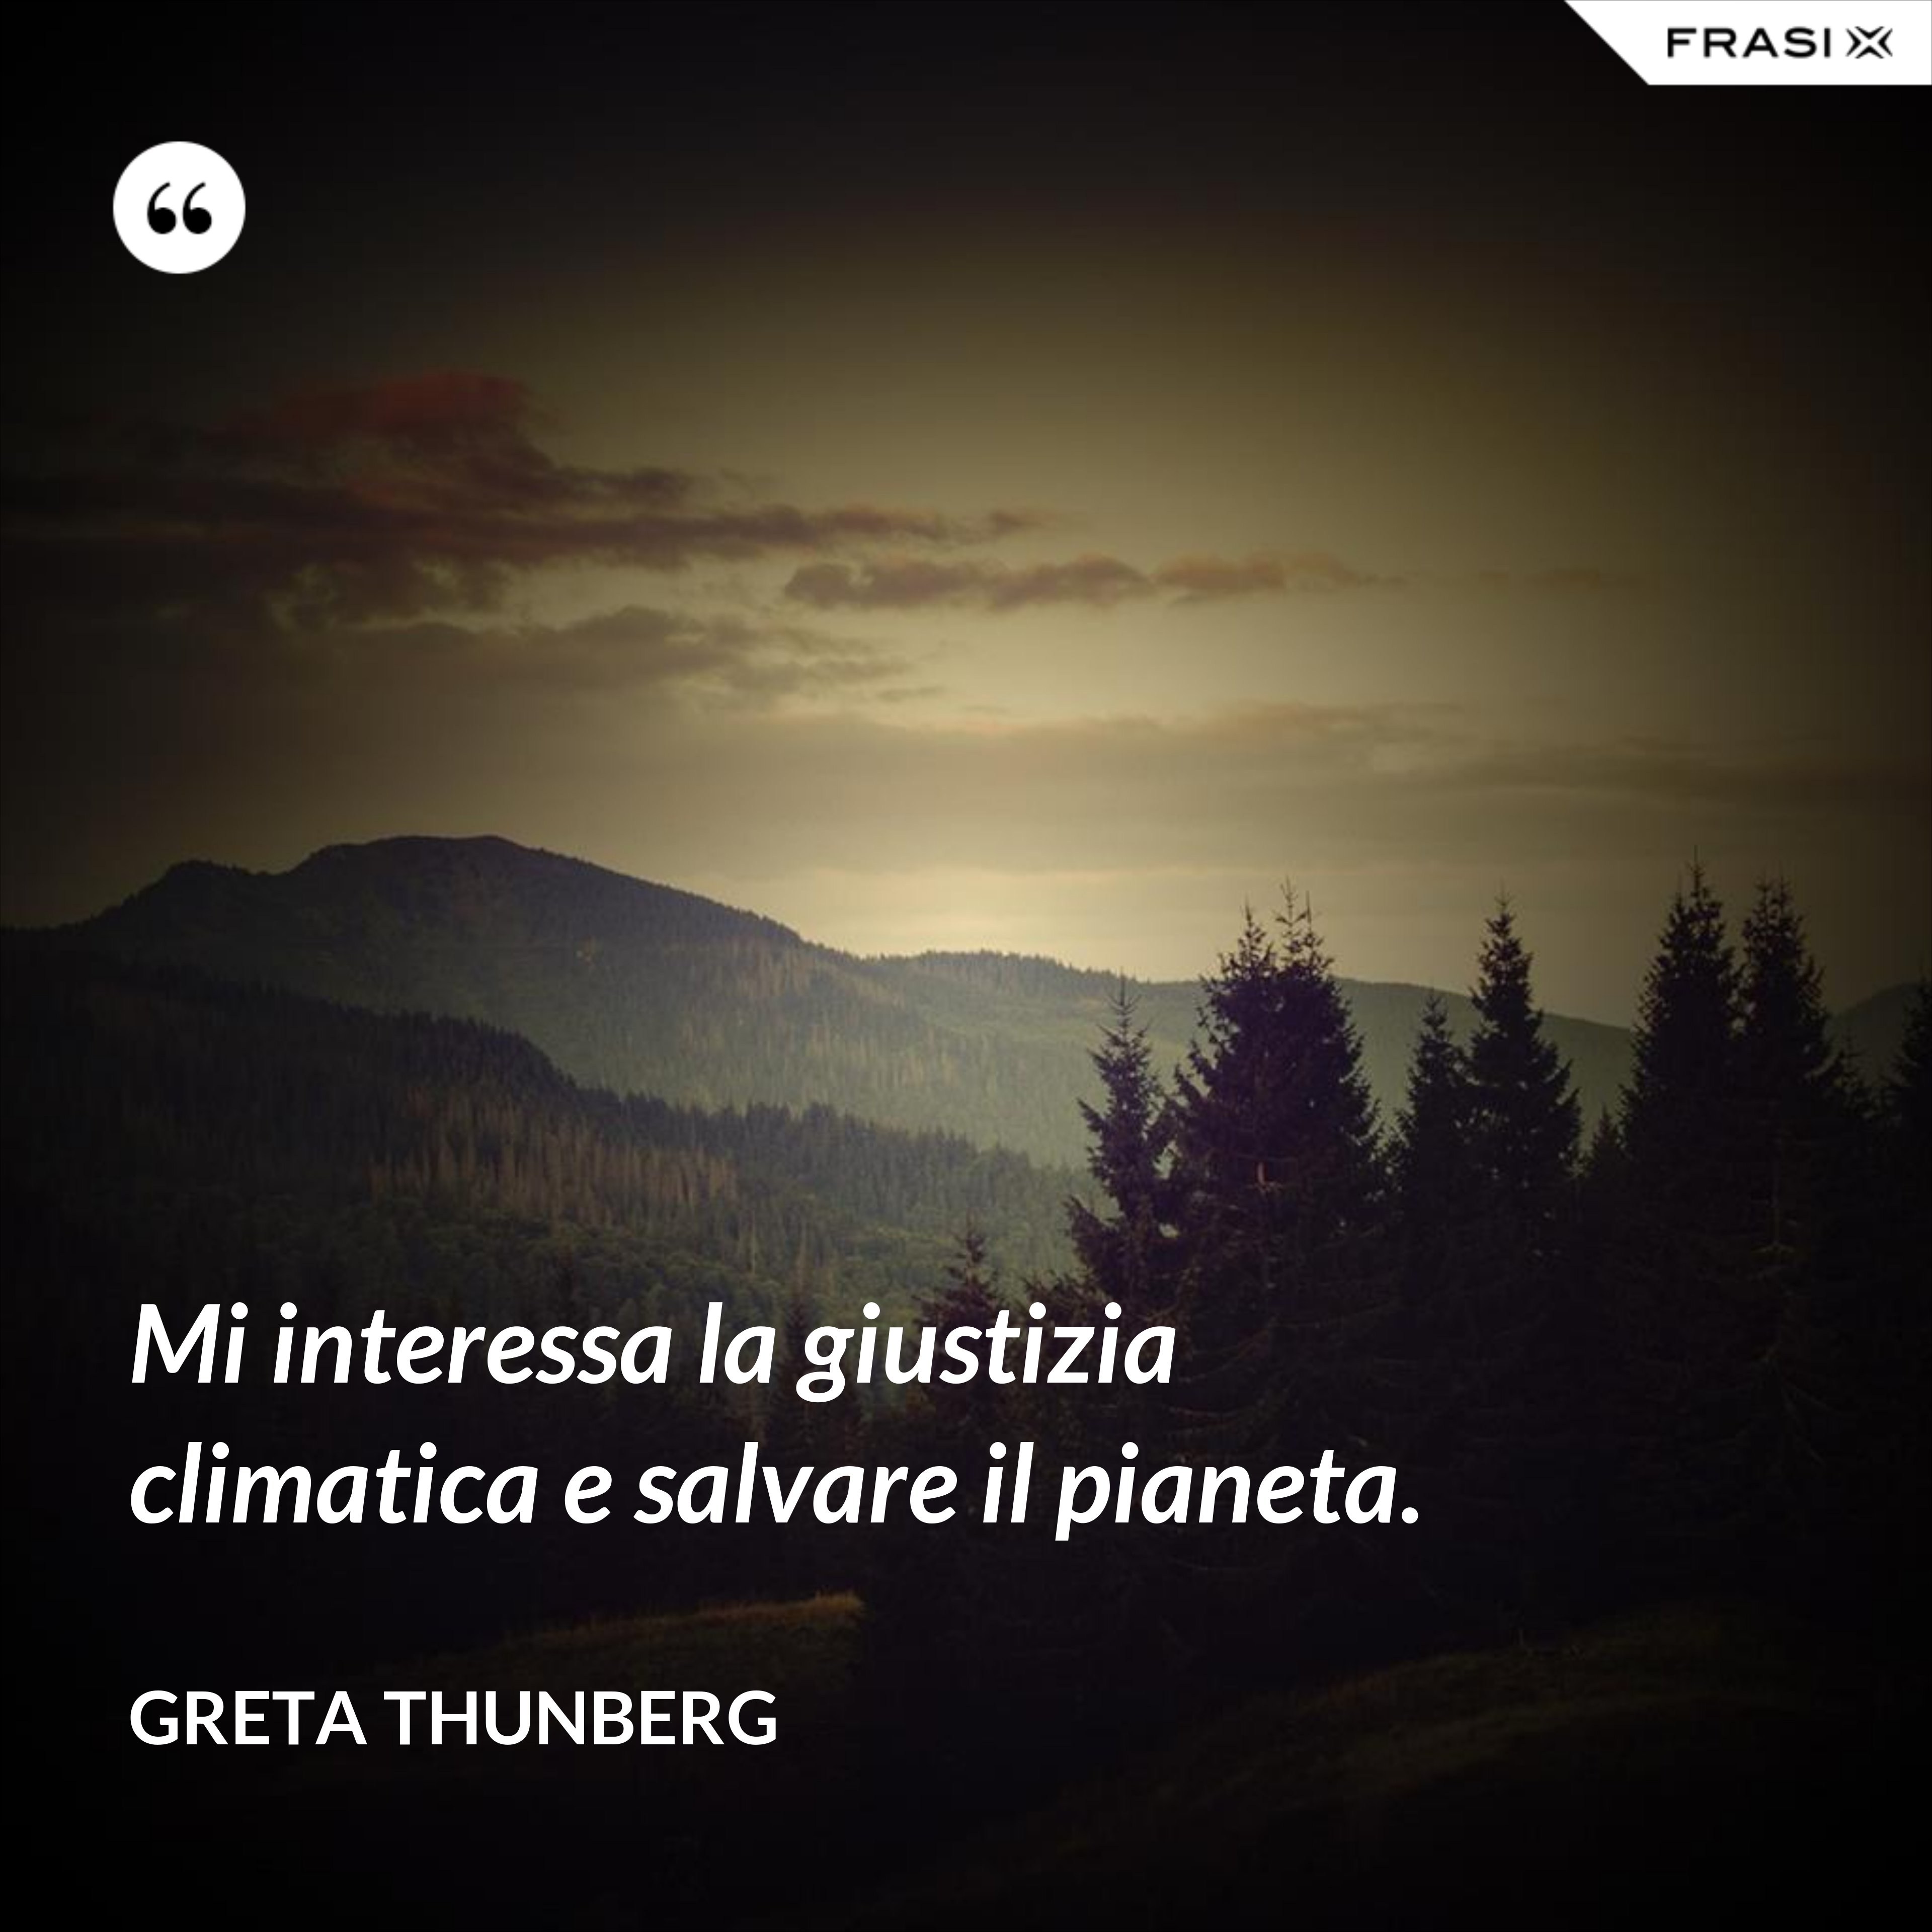 Mi interessa la giustizia climatica e salvare il pianeta. - Greta Thunberg